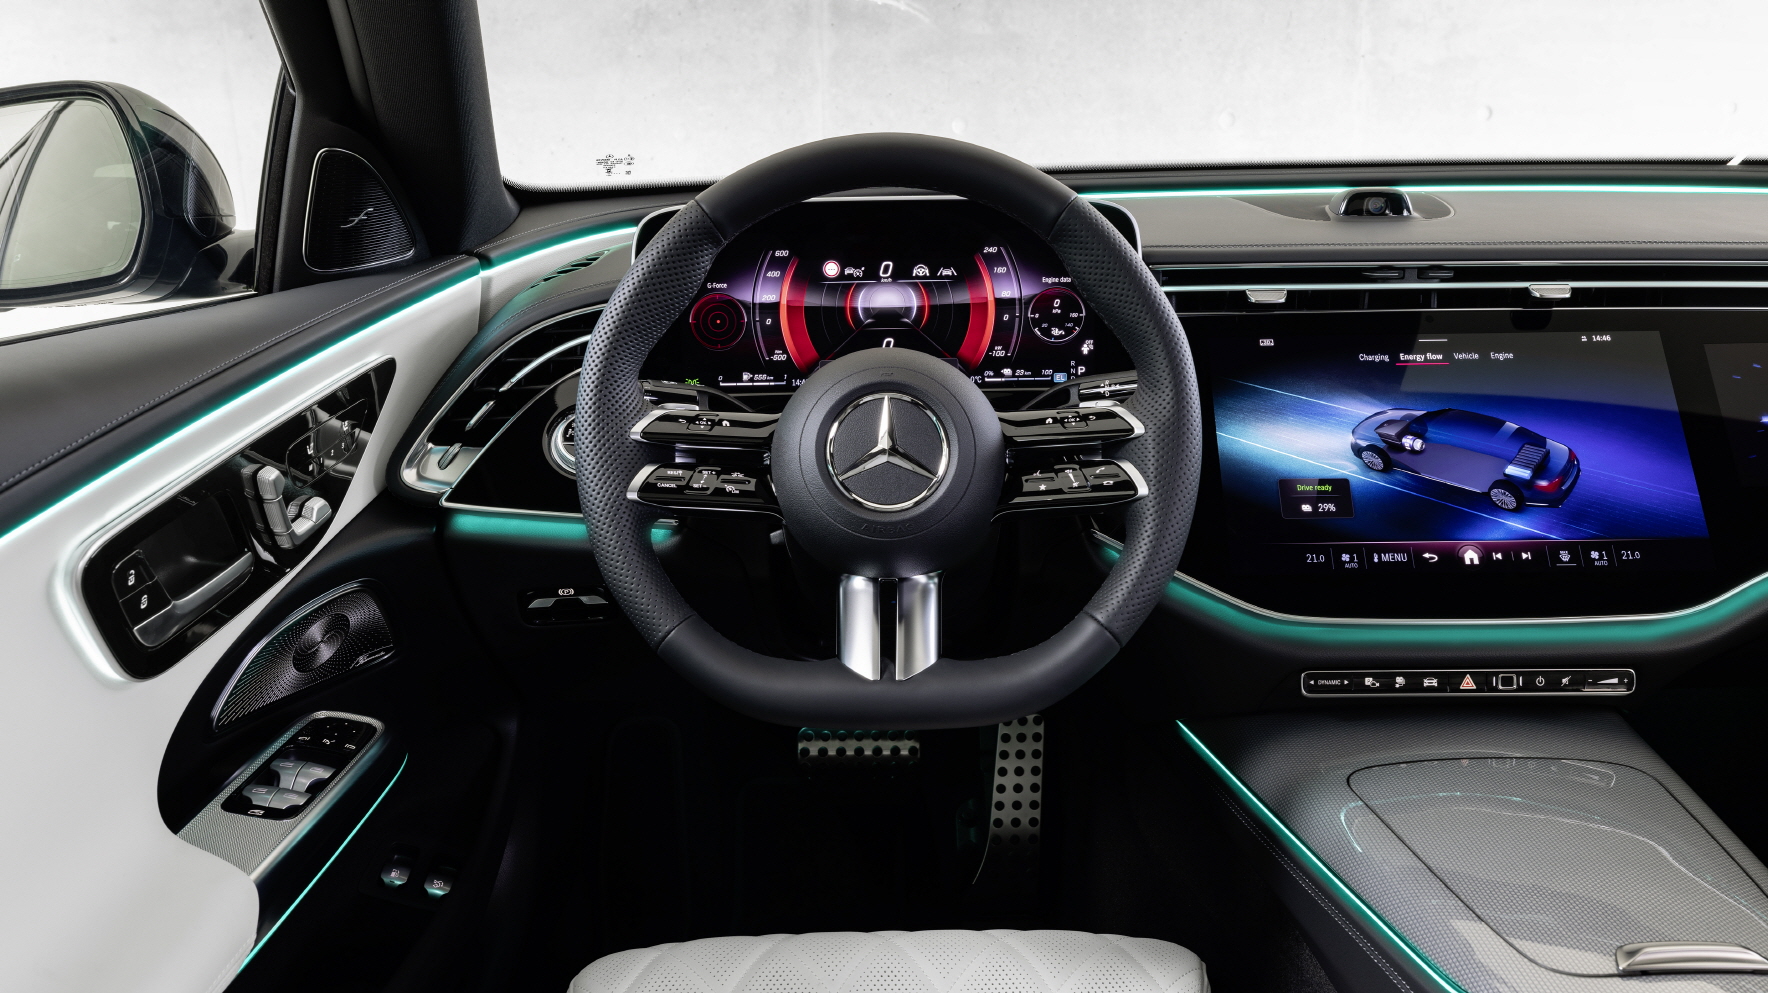 메르세데스-벤츠가 프리미엄 중형세단 E-클래스의 신형 모델 ‘더 뉴 메르세데스-벤츠 E-클래스(The new Mercedes-Benz E-Class)’를 세계 최초로 공개한다.